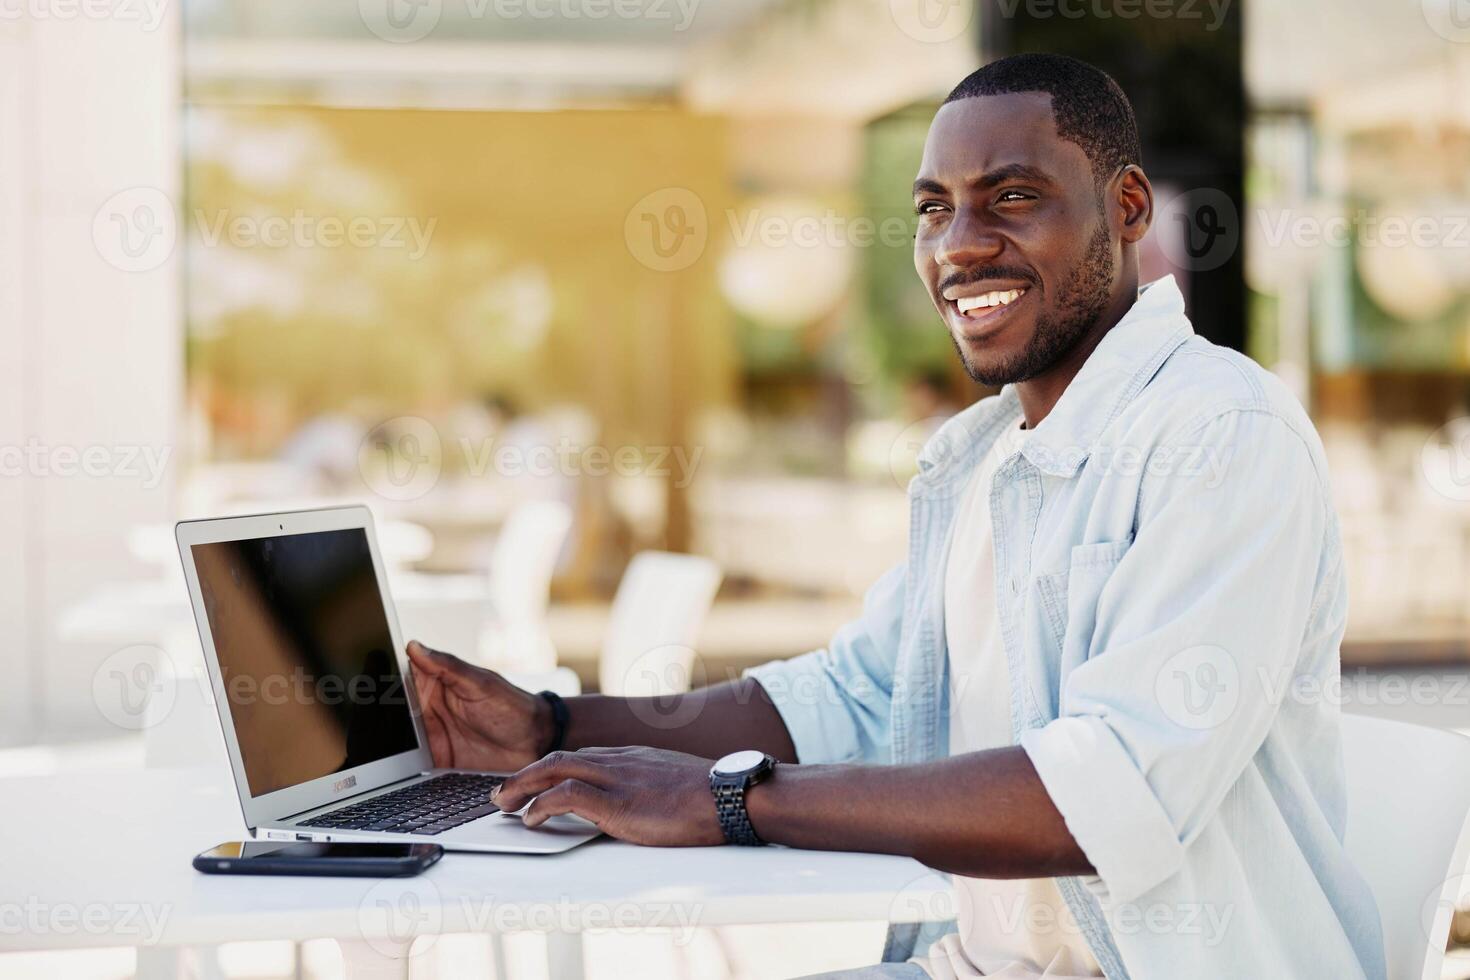 persona contento adulto sonrisa alegre joven computadora retrato negocio masculino Internet empresario hombres foto